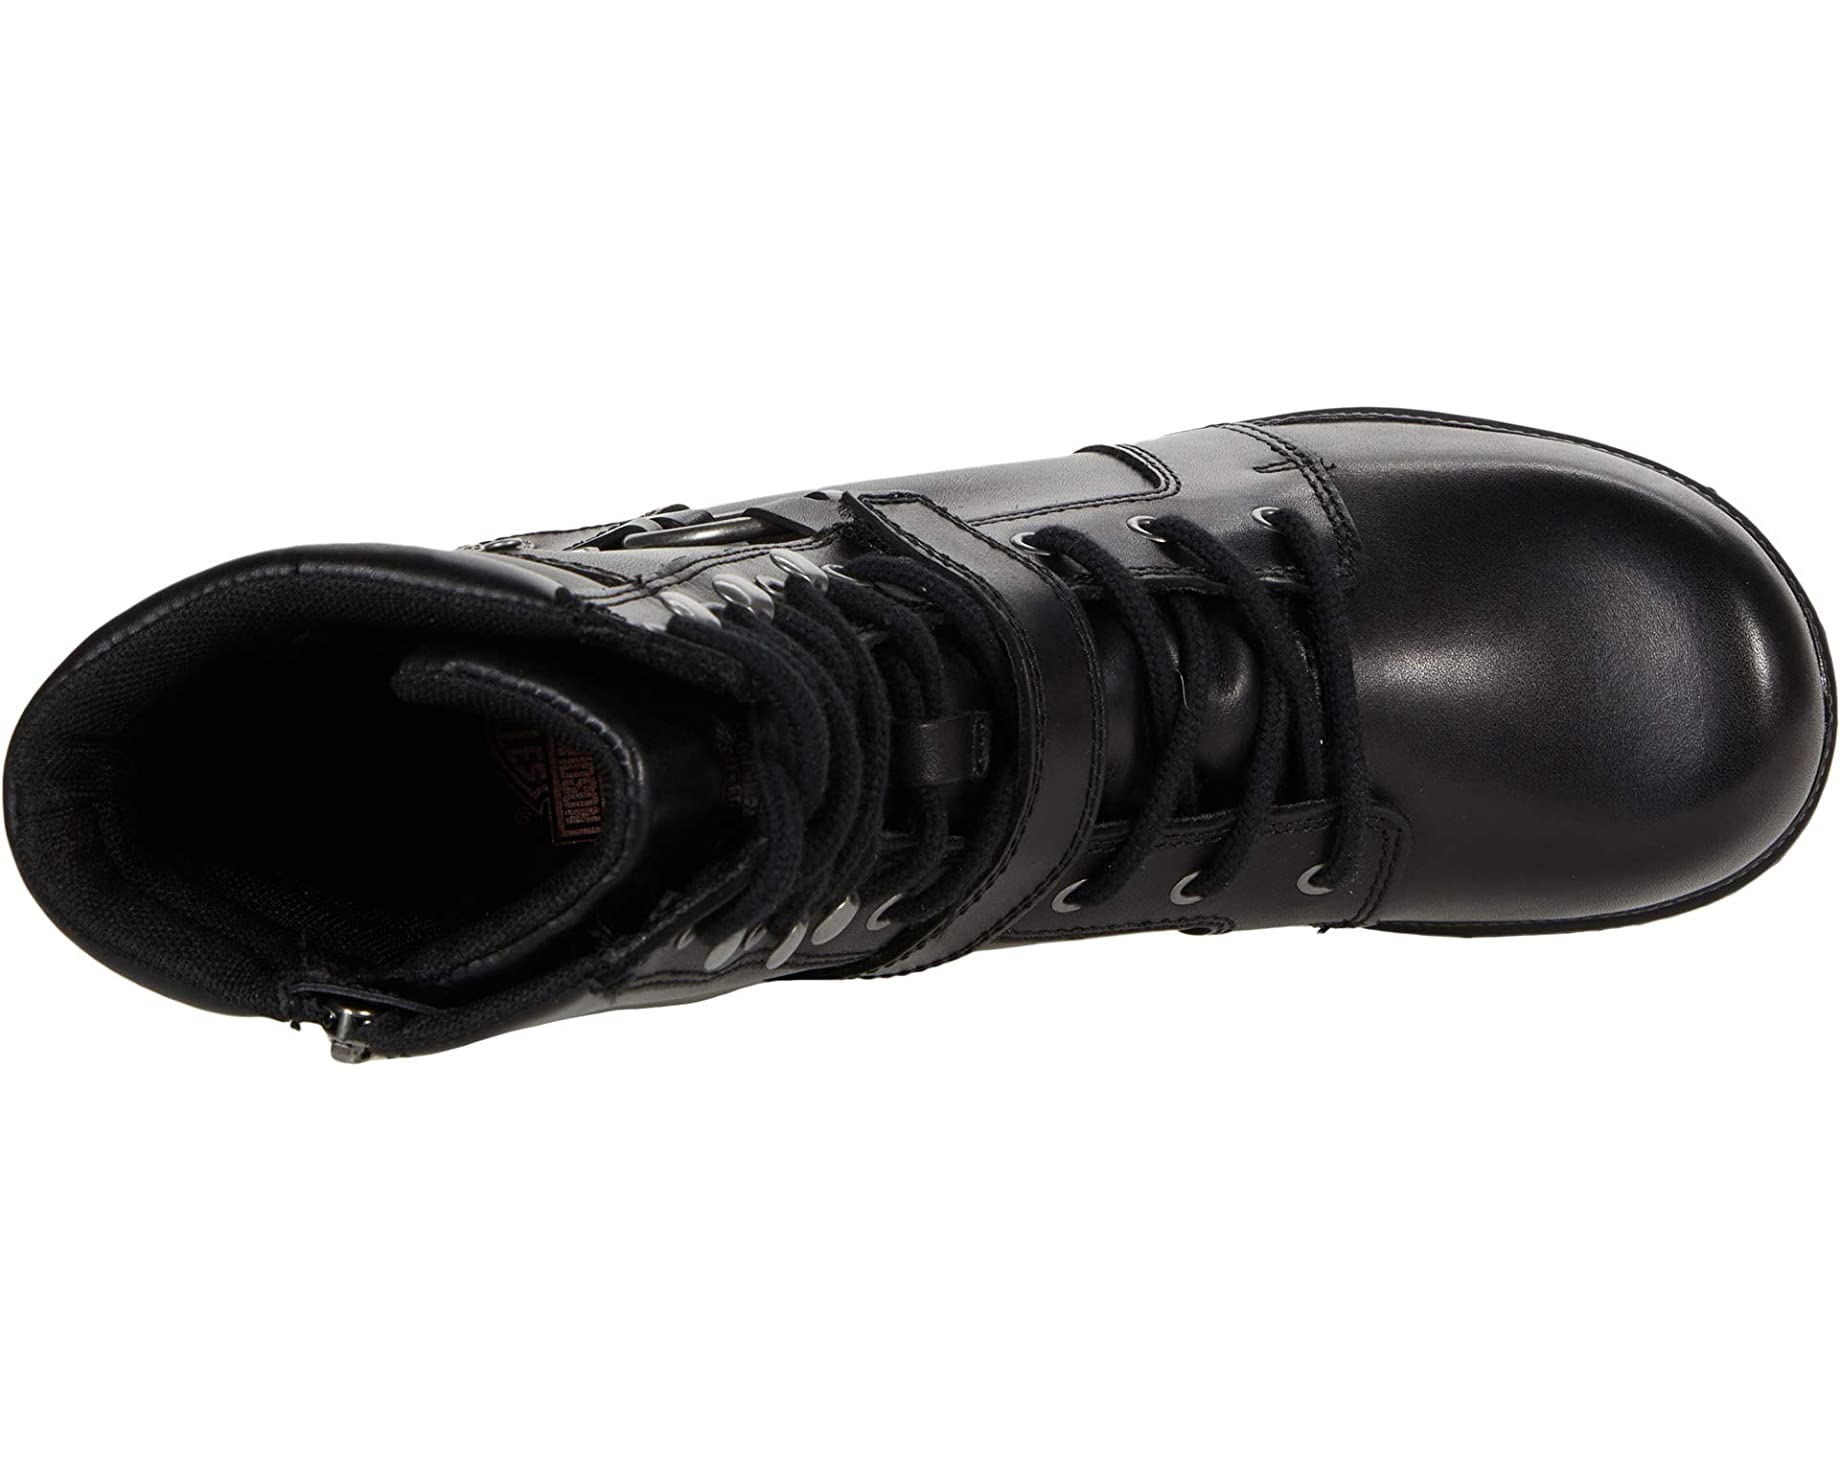 Ботинки Tegan 6 Harness Harley-Davidson, черный ботинки harley davidson electron кожаные повседневные черный